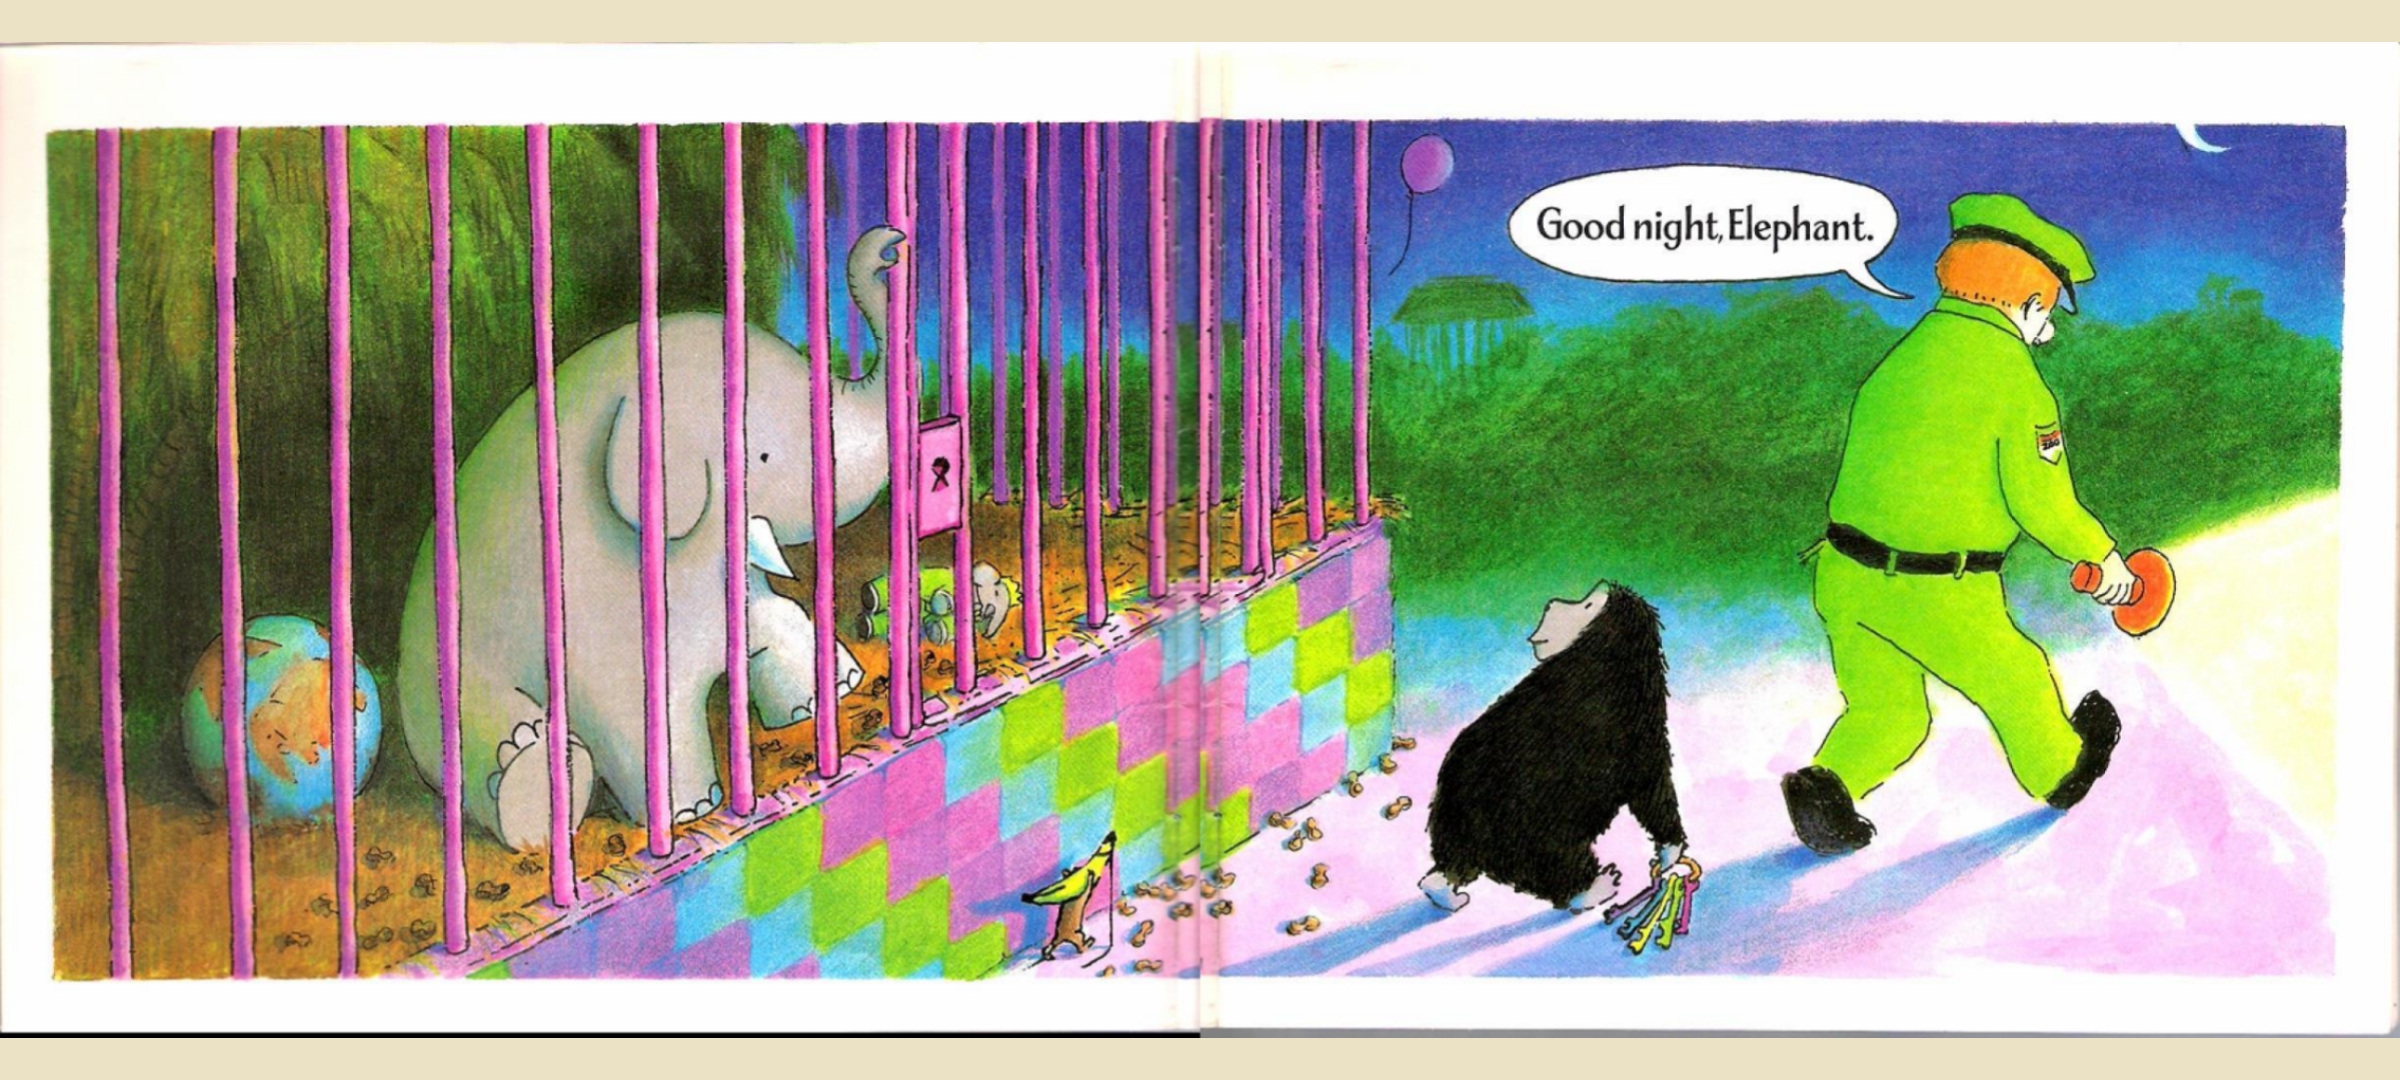 Good Night, Gorilla | 晚安，调皮蛋